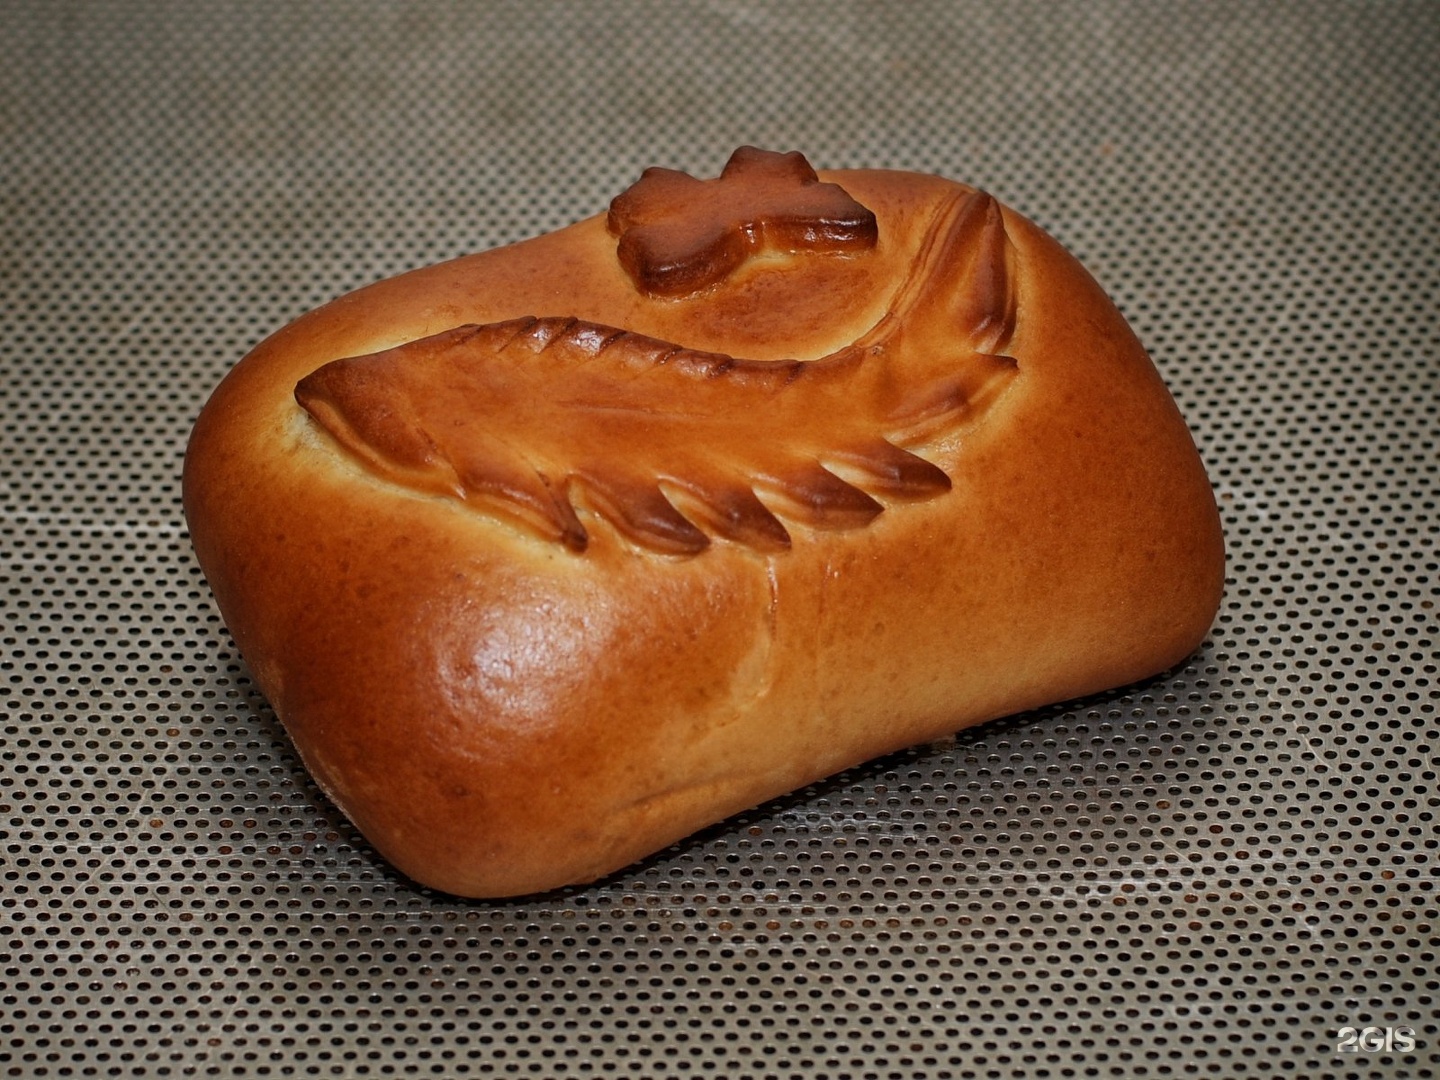 Сайт с пирогами спб. Пироги на заказ Питер. Хлеб из Питера. Пирожки в виде мышей. Пирожок в форме жука.